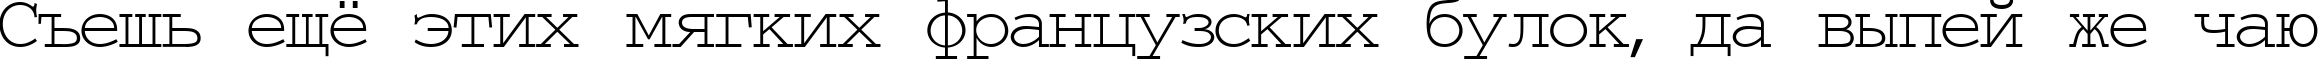 Пример написания шрифтом TypeWriter Normal текста на русском